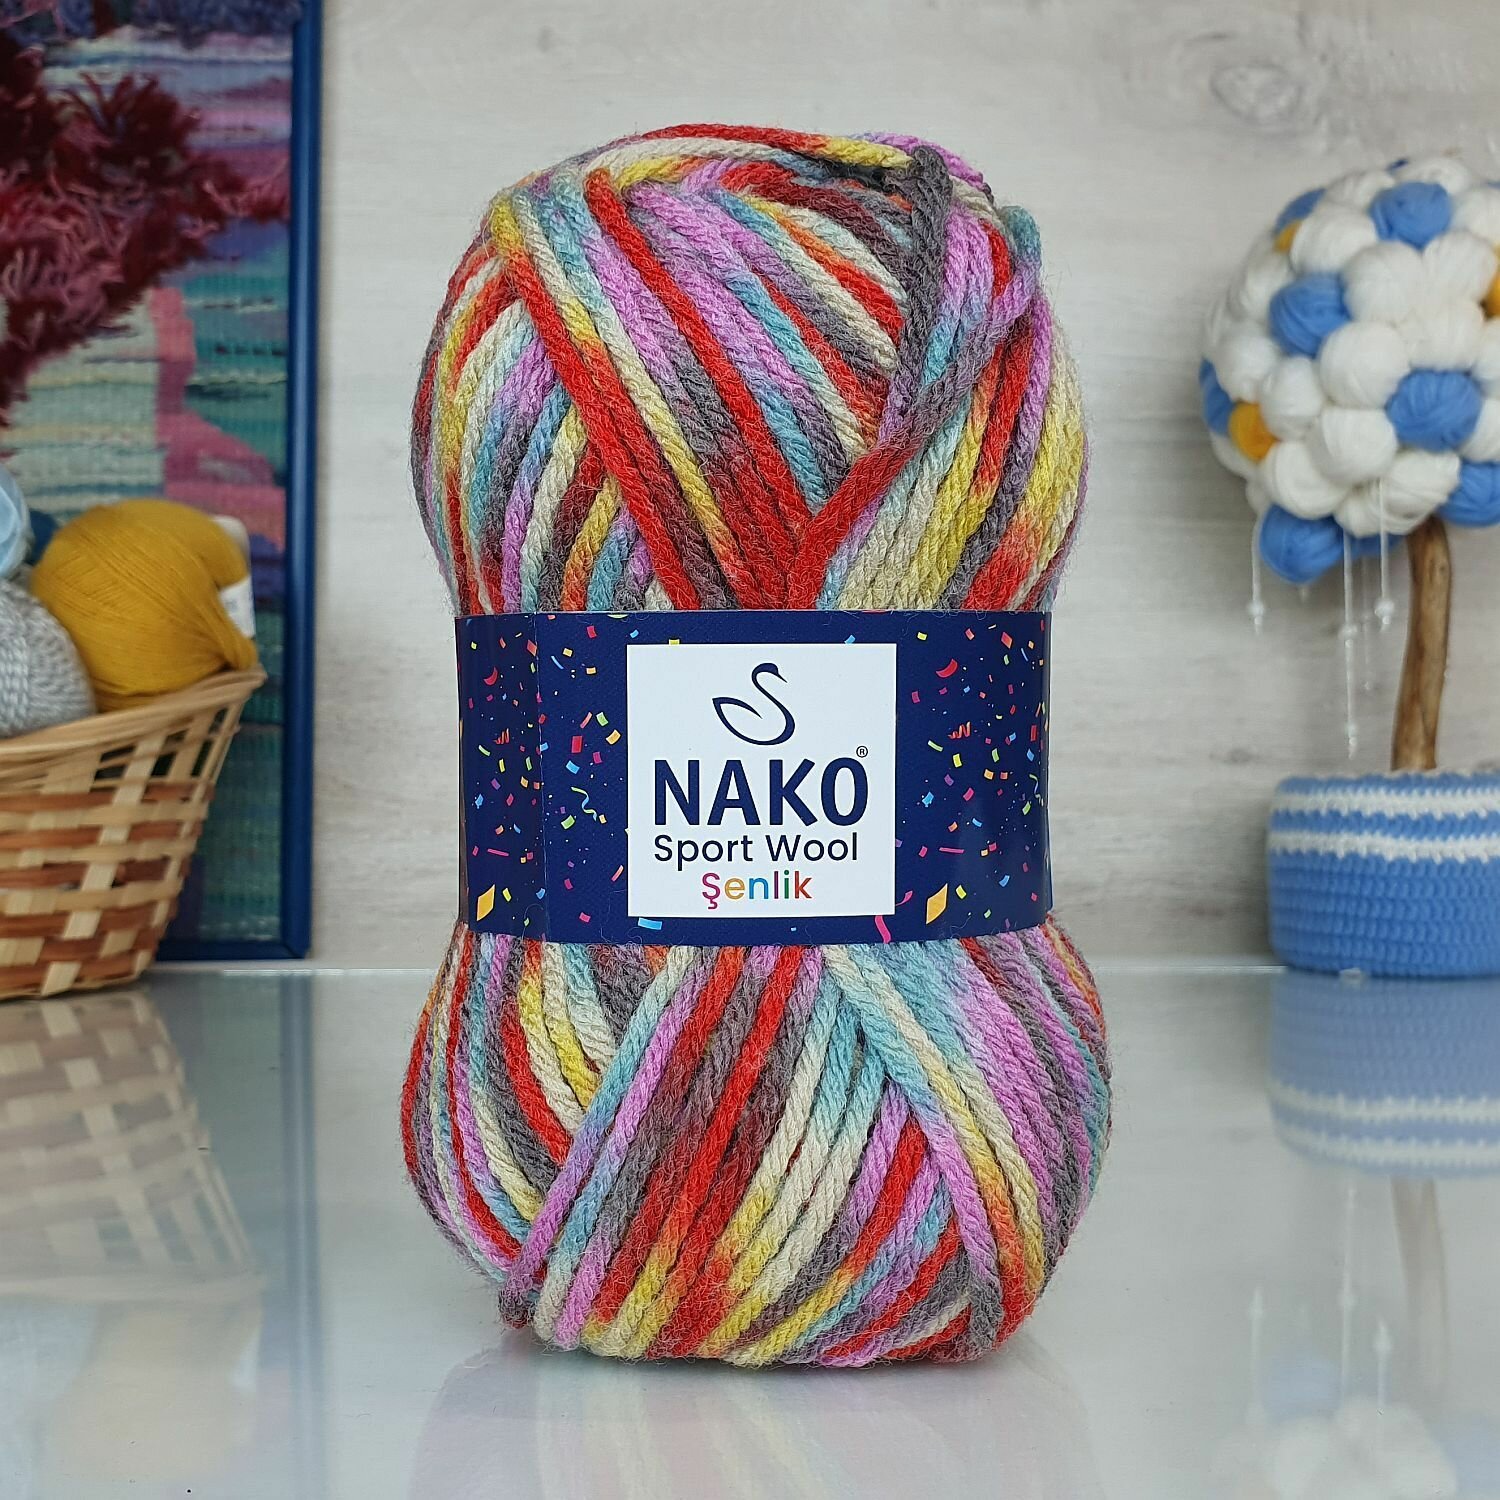 Пряжа Sport wool senlik Nako, принт - 87736, 25% шерсть, 75% премиум акрил, 5 мотков, 100 г, 120 м.